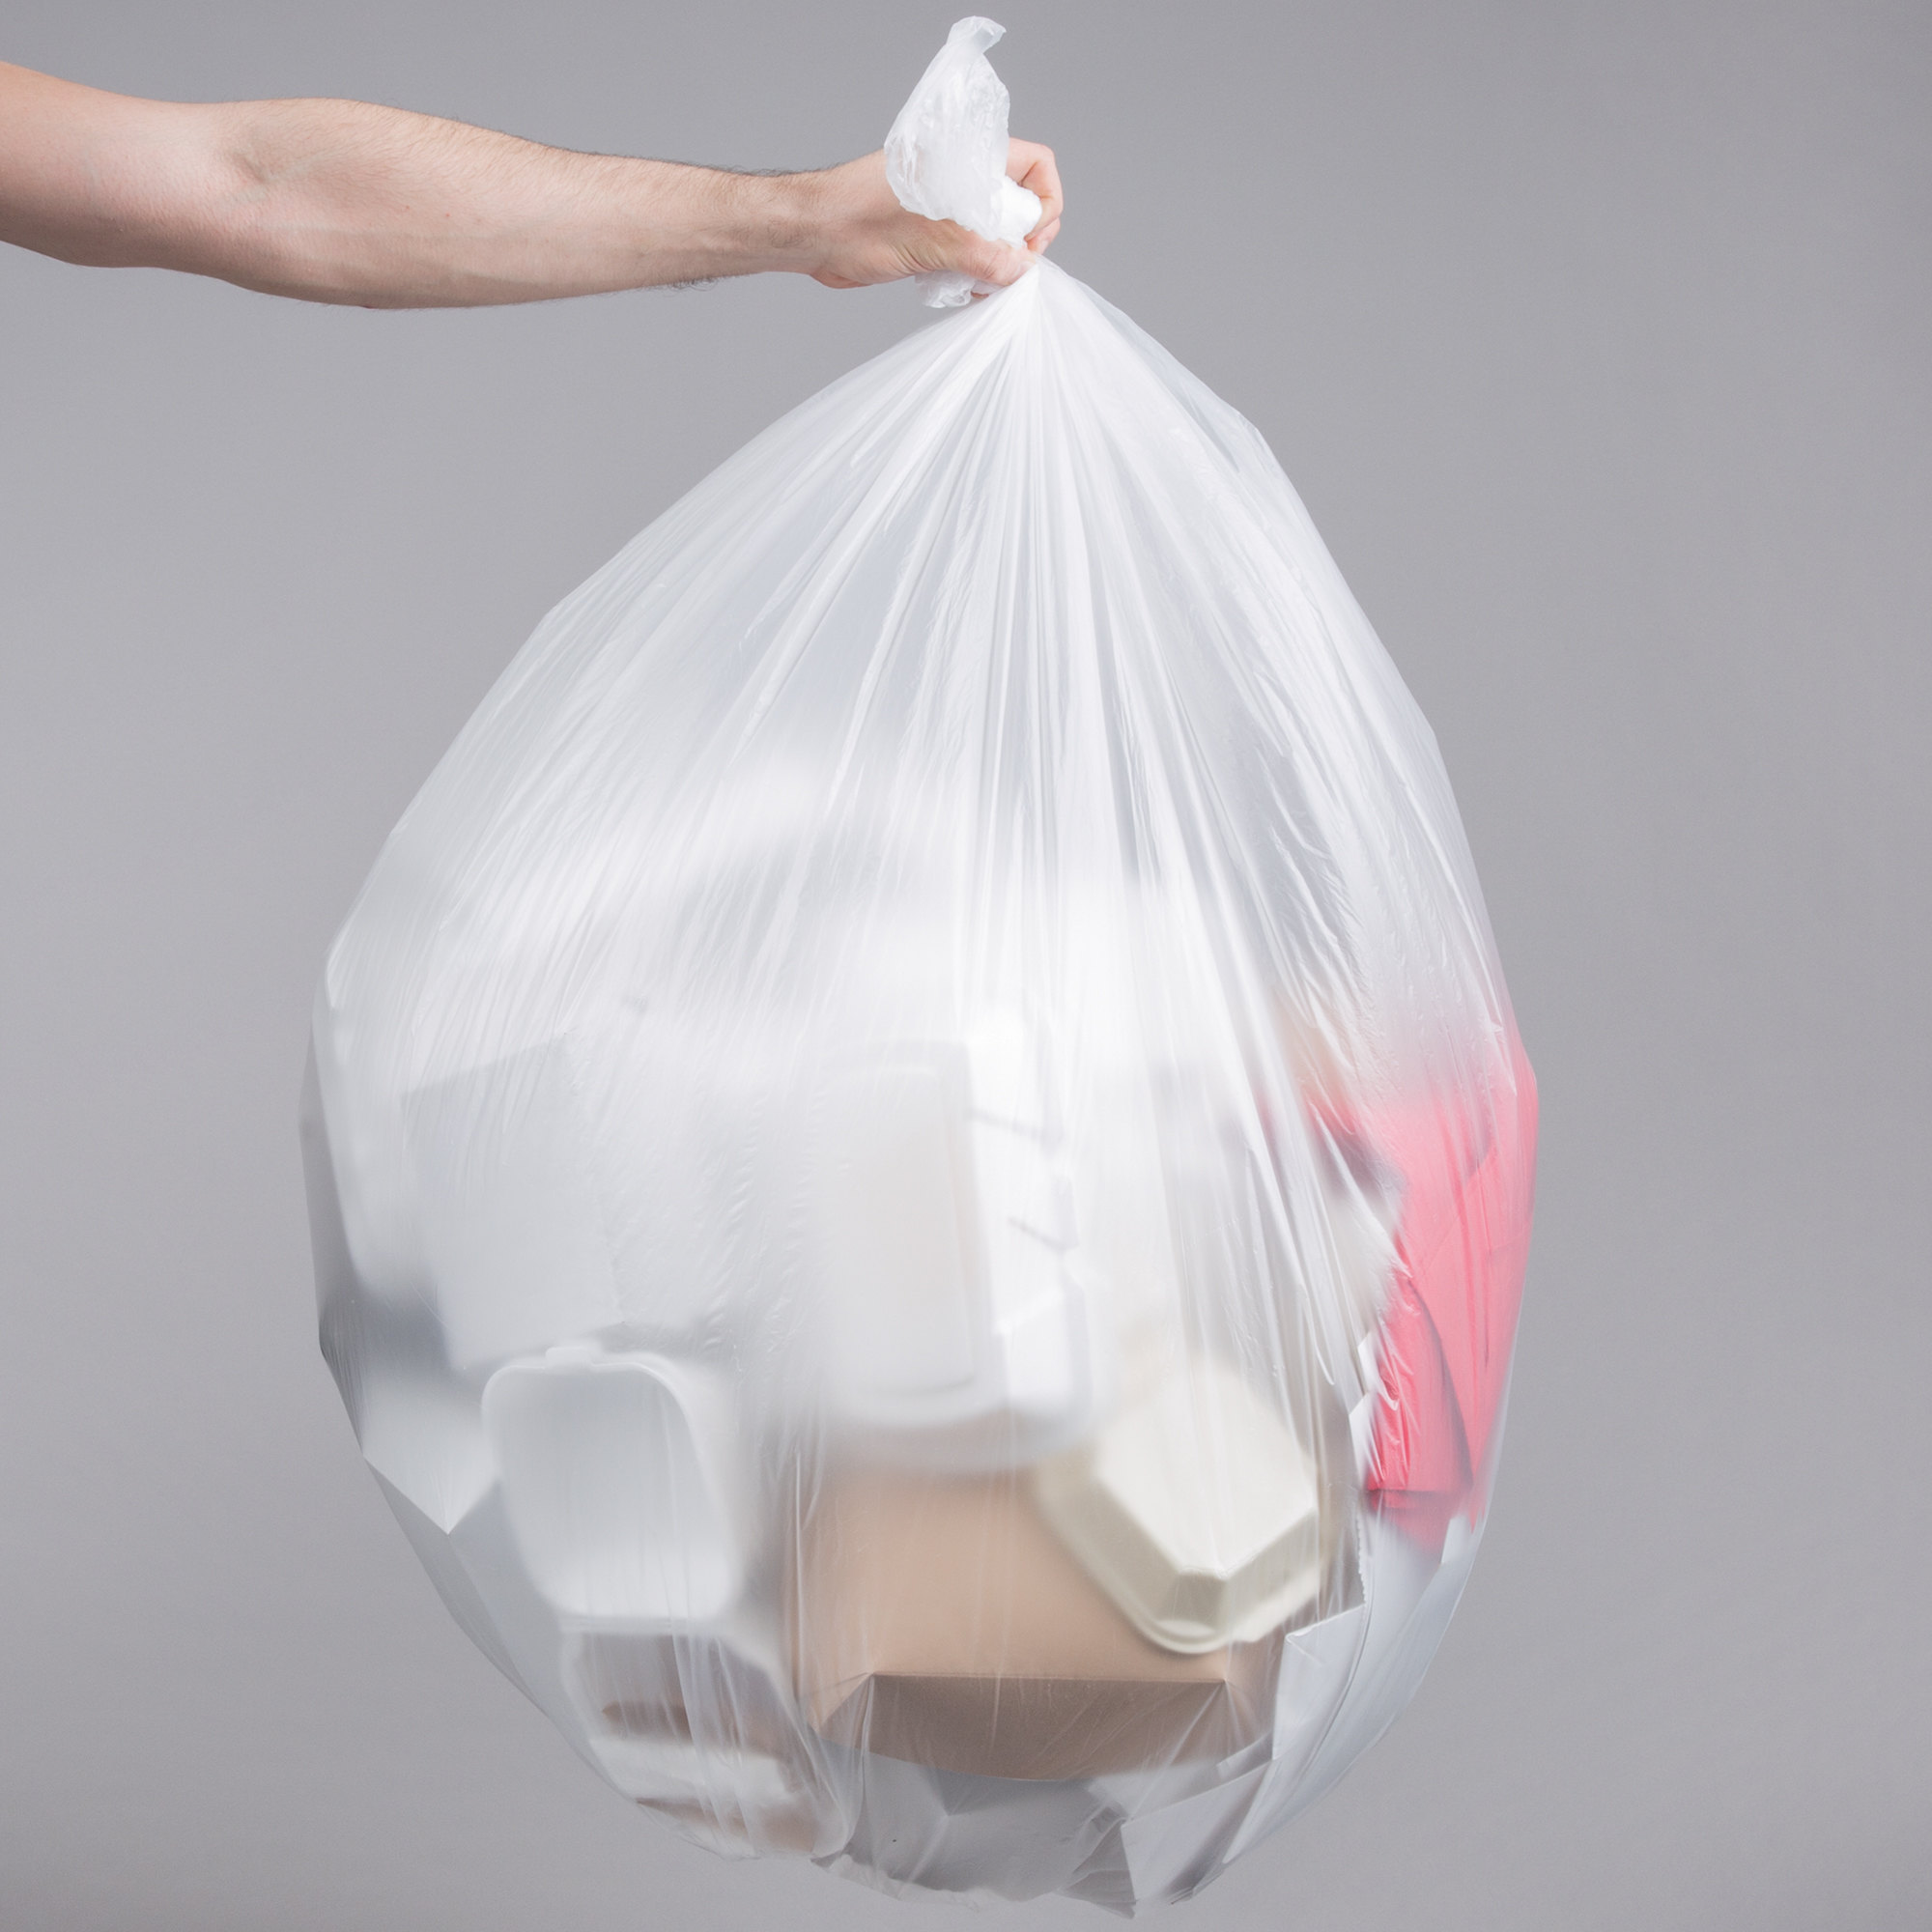 Buy Wholesale China Refuse Sacks Large Size 80l Black Plastic